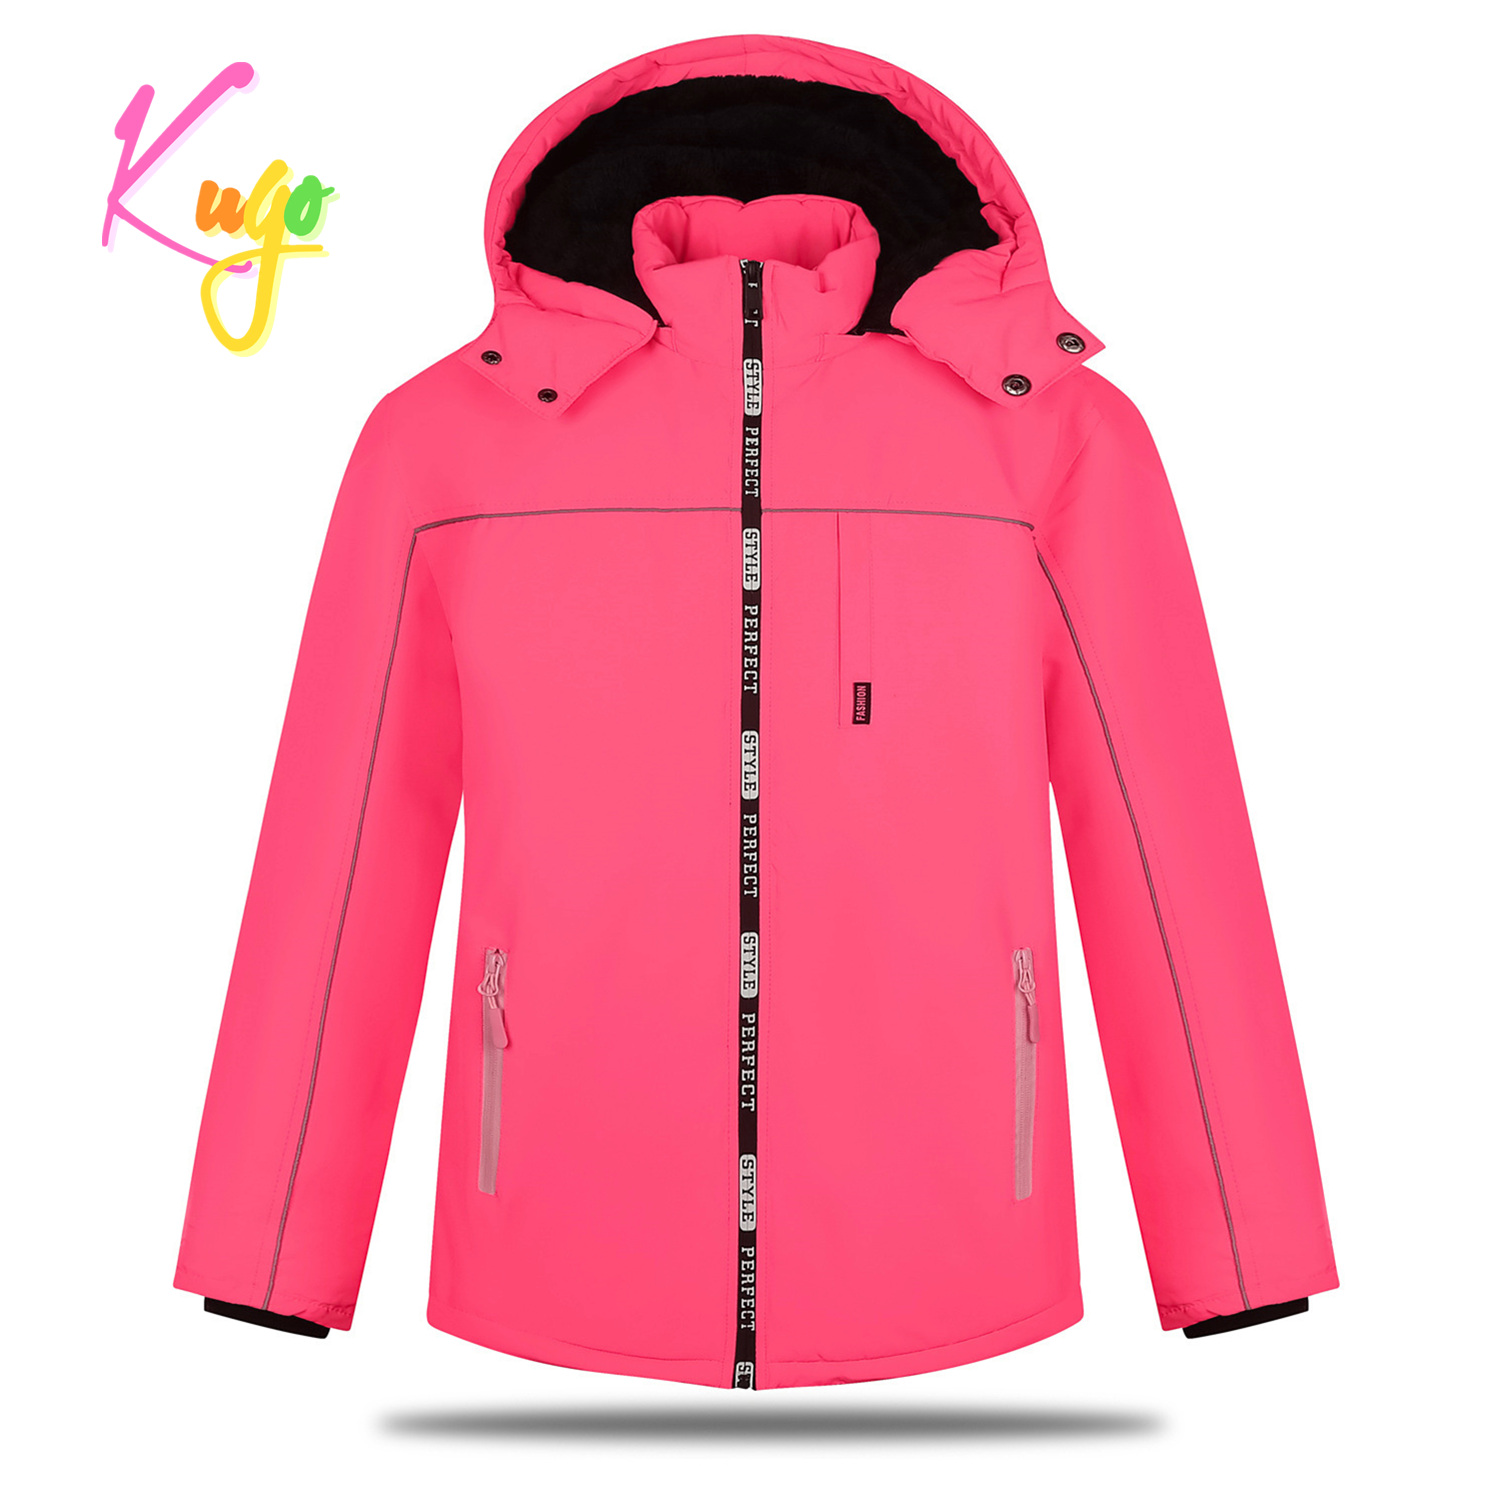 Dívčí zimní bunda - KUGO BU606, neonově lososová Barva: Lososová, 